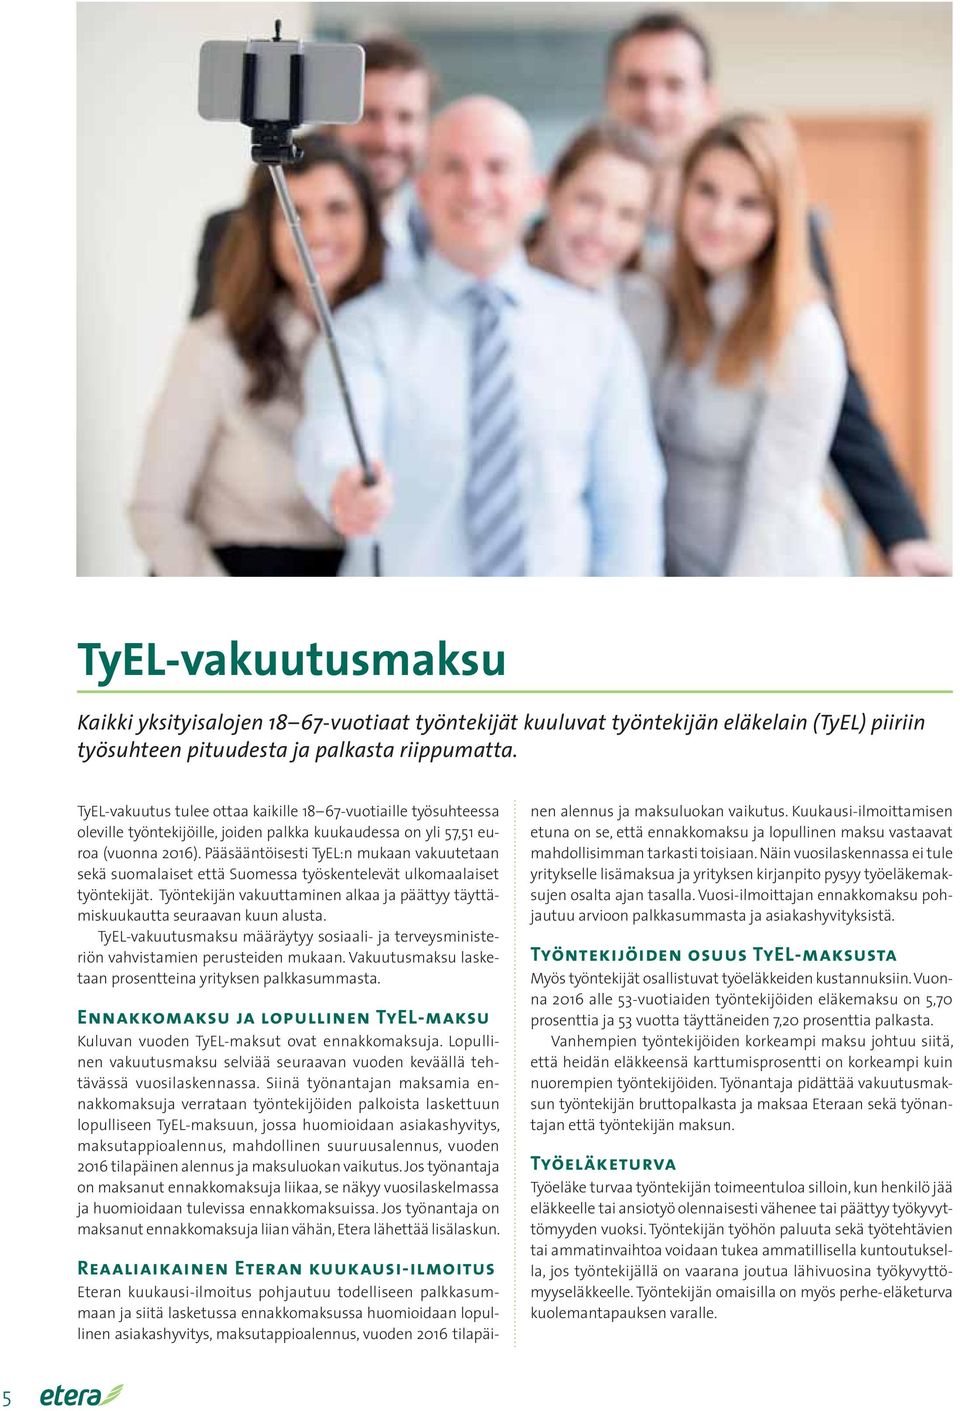 Pääsääntöisesti TyEL:n mukaan vakuutetaan sekä suomalaiset että Suomessa työskentelevät ulkomaalaiset työntekijät. Työntekijän vakuuttaminen alkaa ja päättyy täyttämiskuukautta seuraavan kuun alusta.